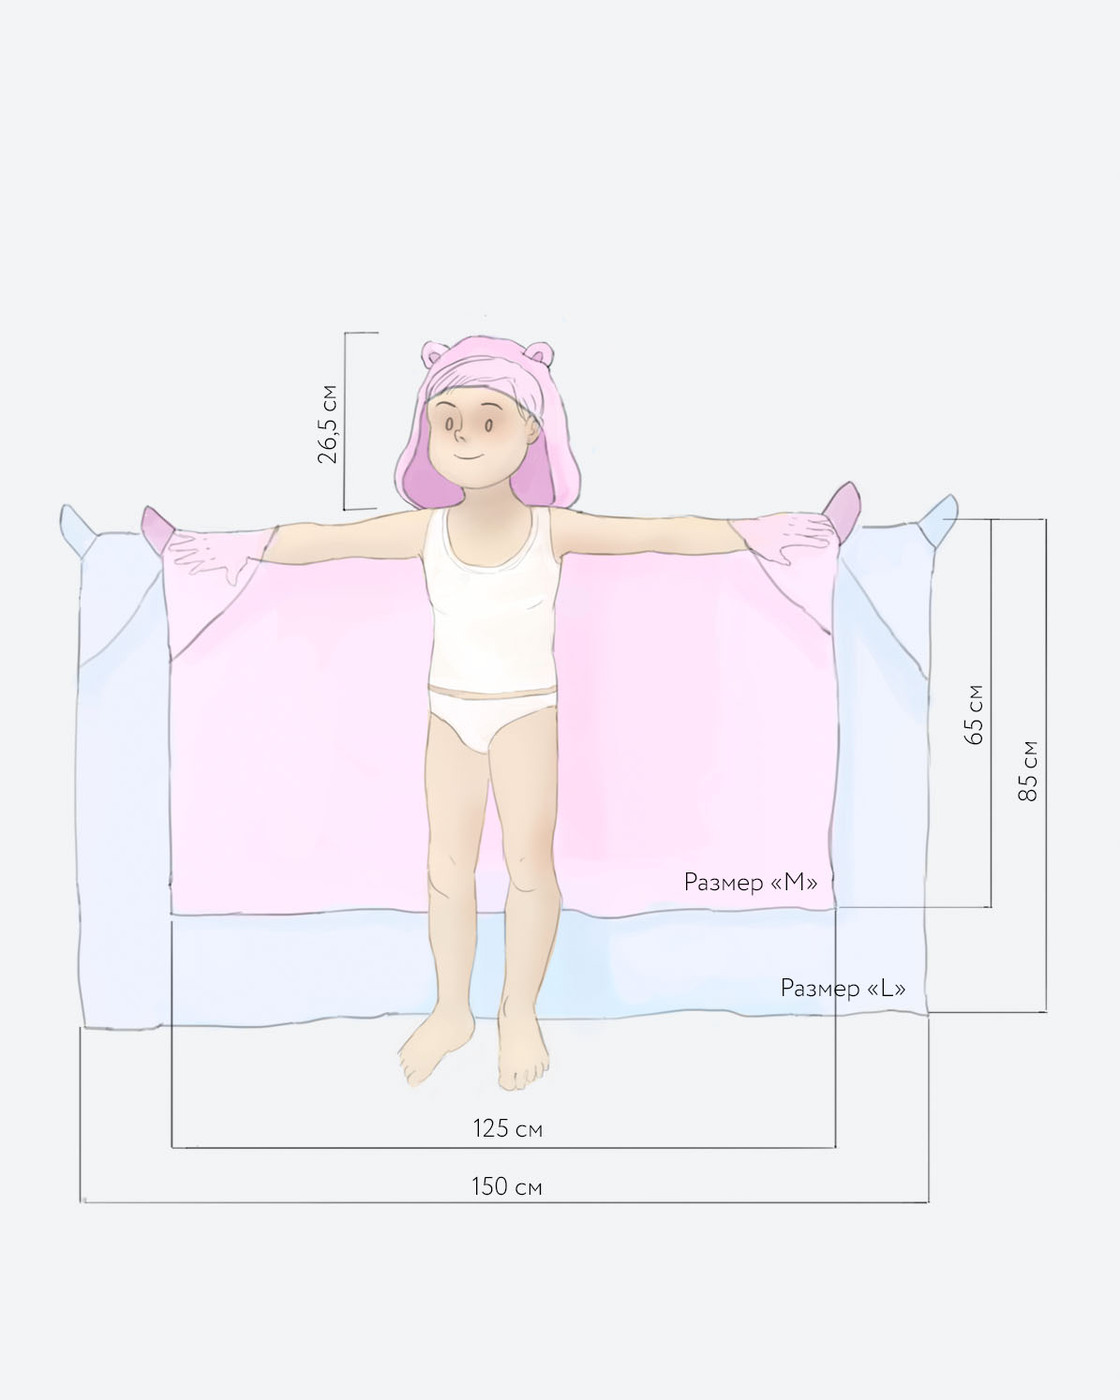 Стандартные размеры полотенец. Полотенце уголок детский Размеры. Полотенце с капюшоном для детей выкройка. Полотенце уголок детское выкройка. Полотенце для новорожденных.